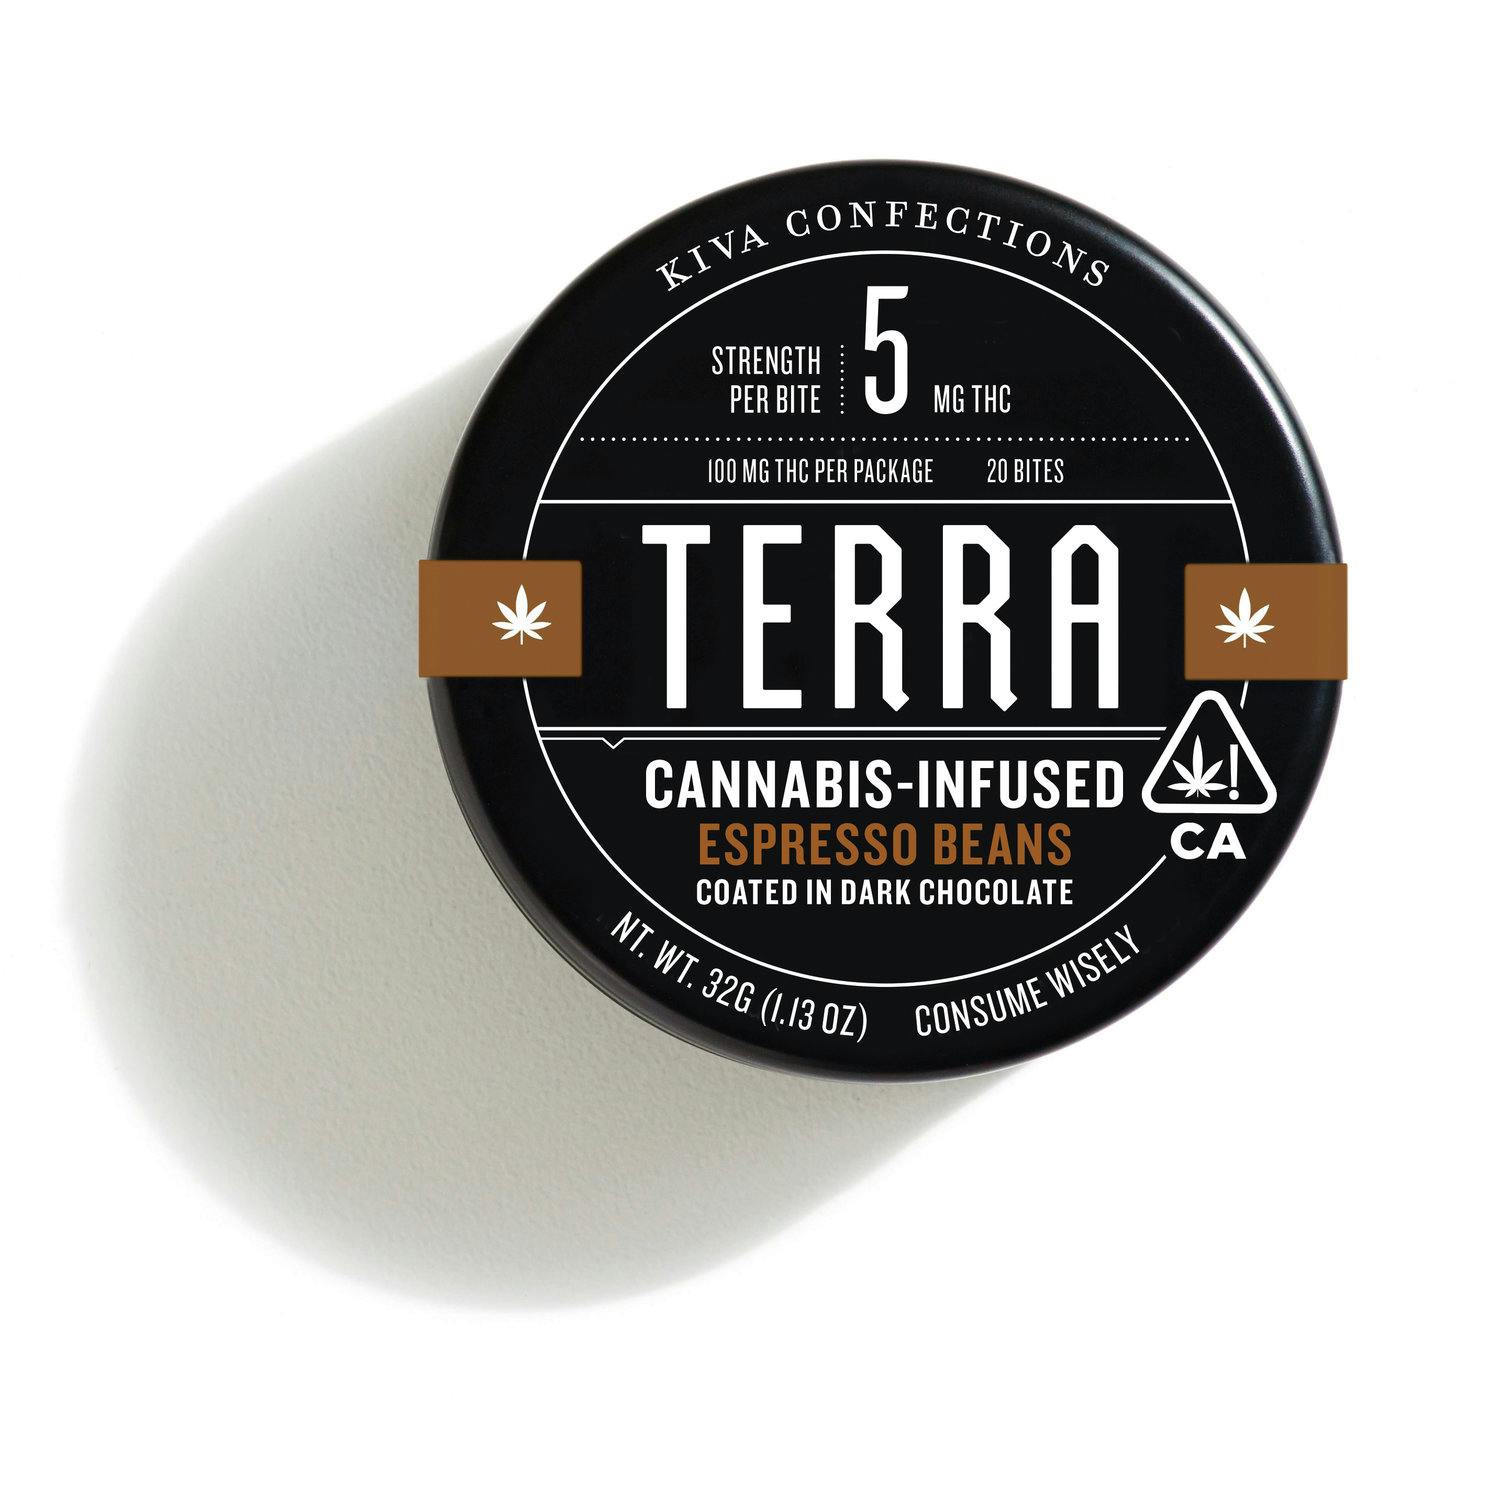 KIVA Cannabis-Infused Terra Bites